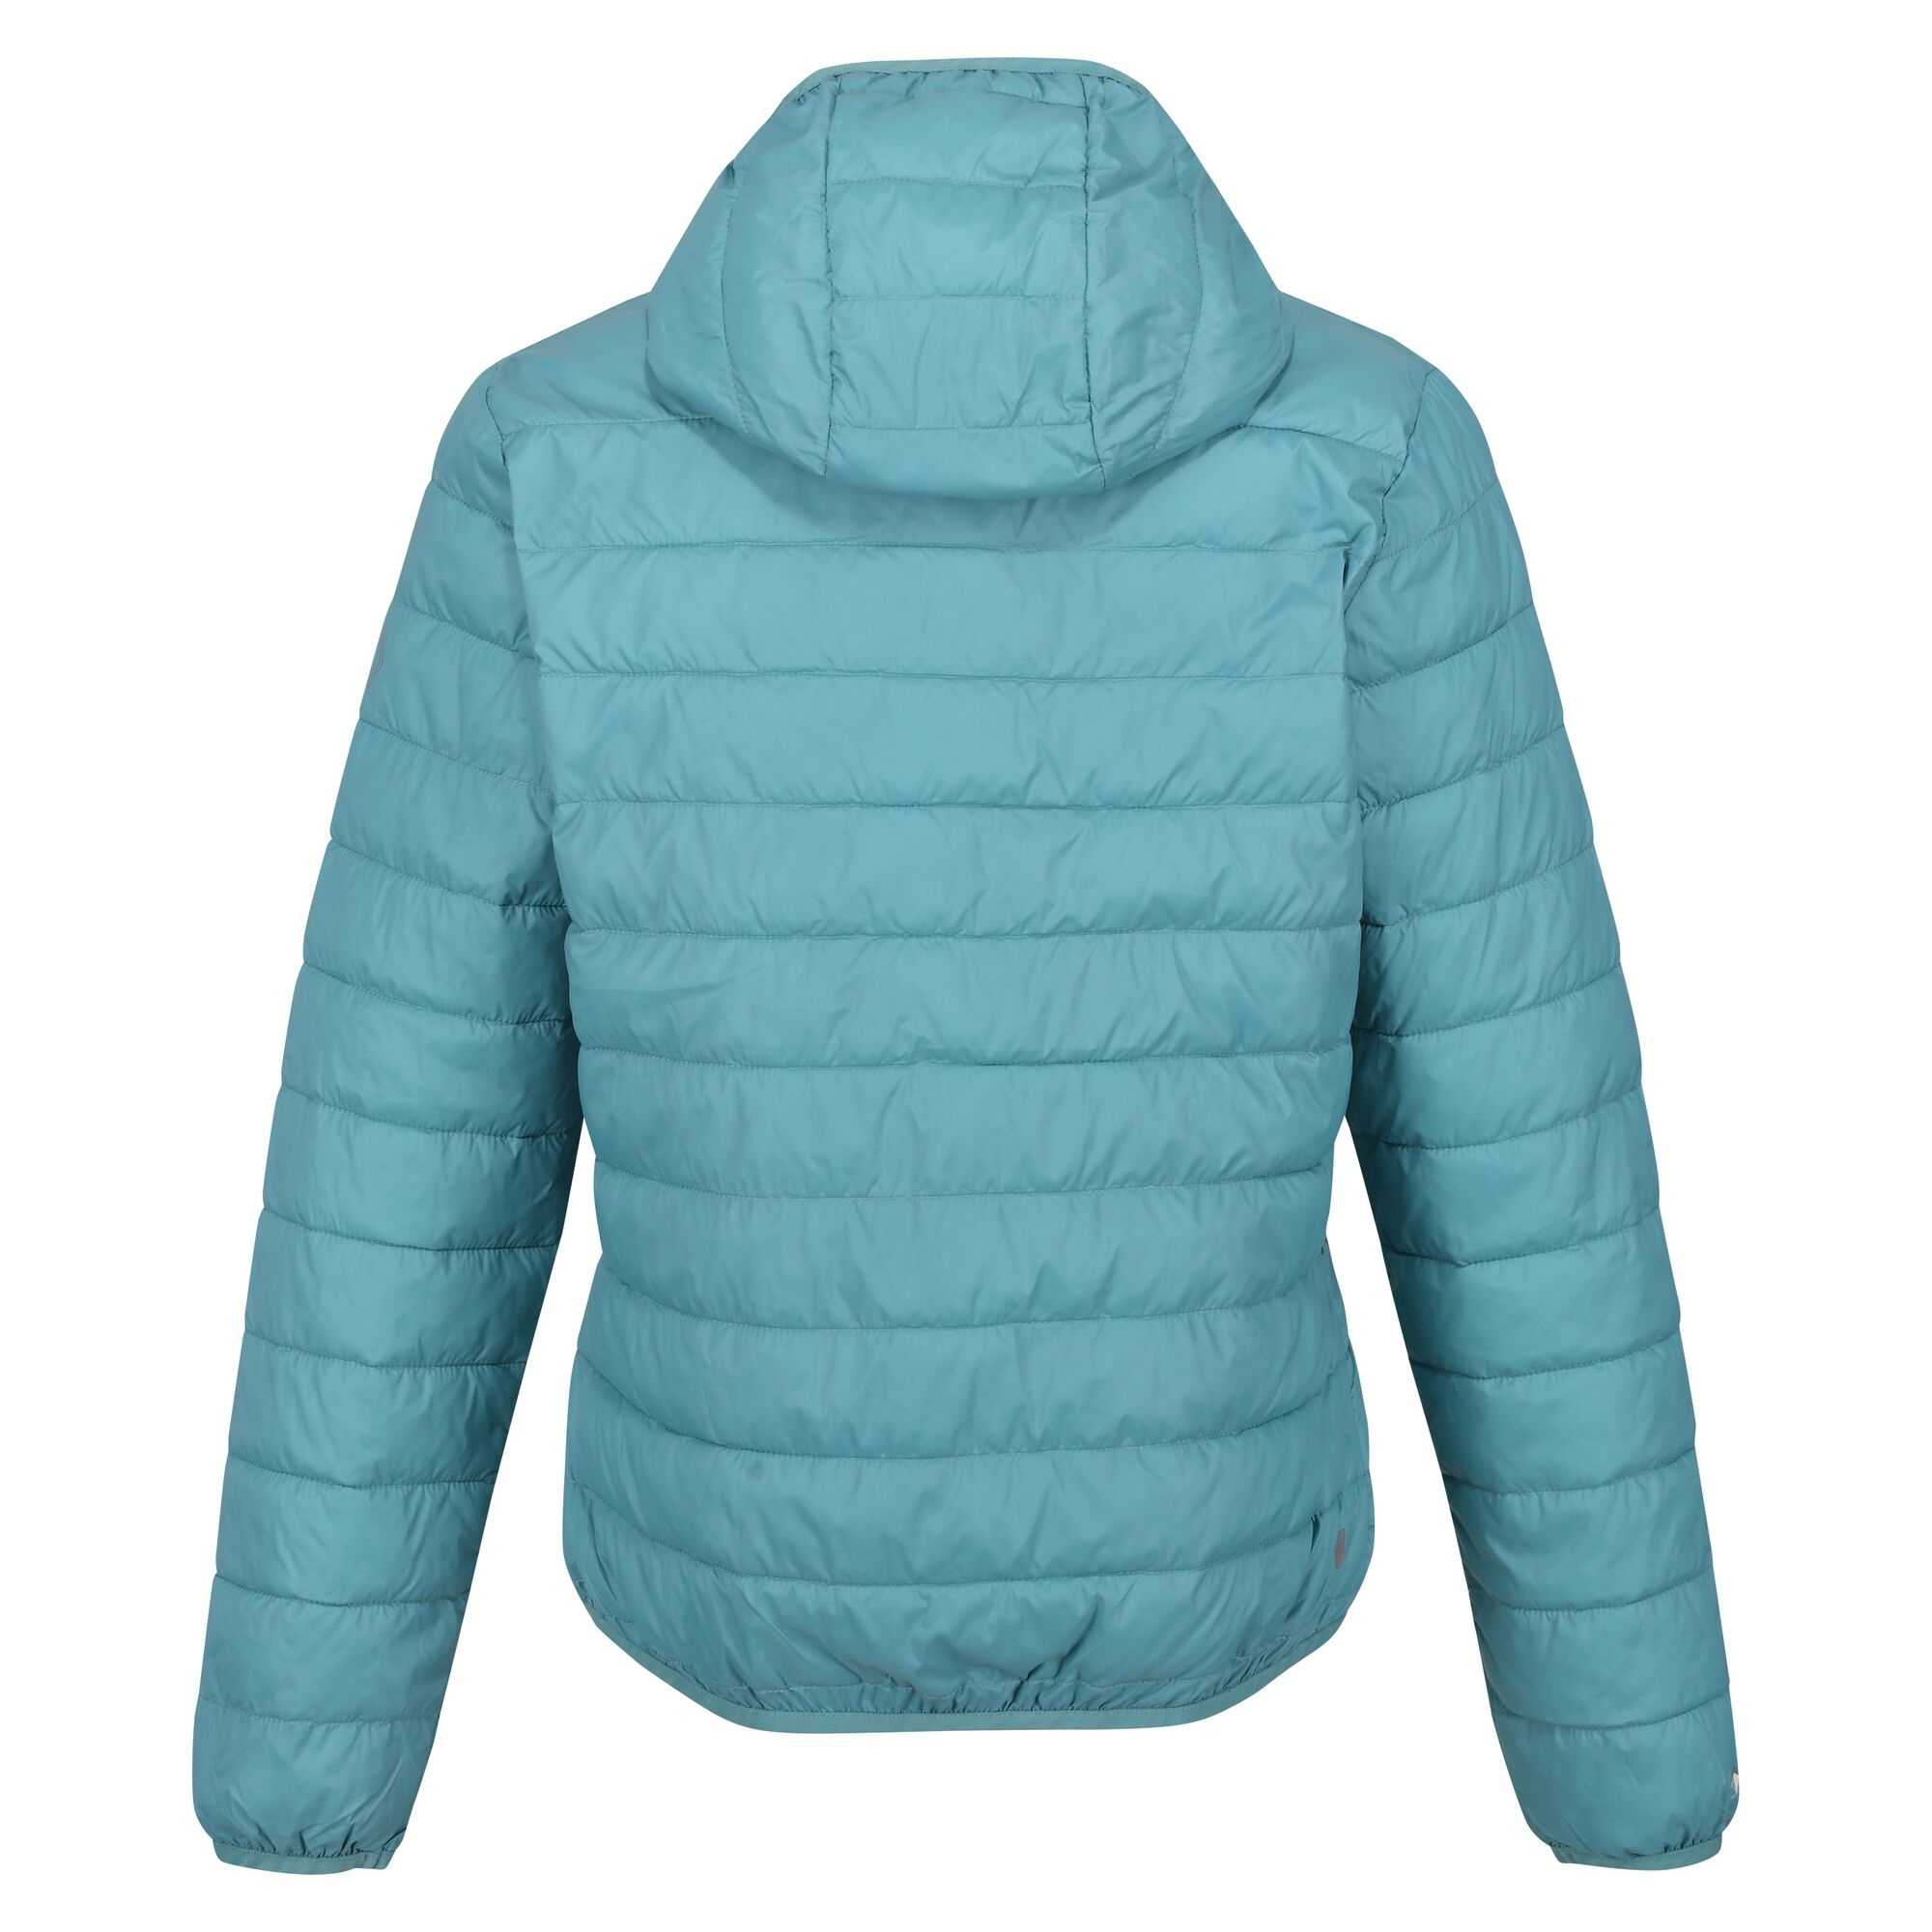 Kadın Kapşonlu Hafif Outdoor Şişme Ceket |Kış